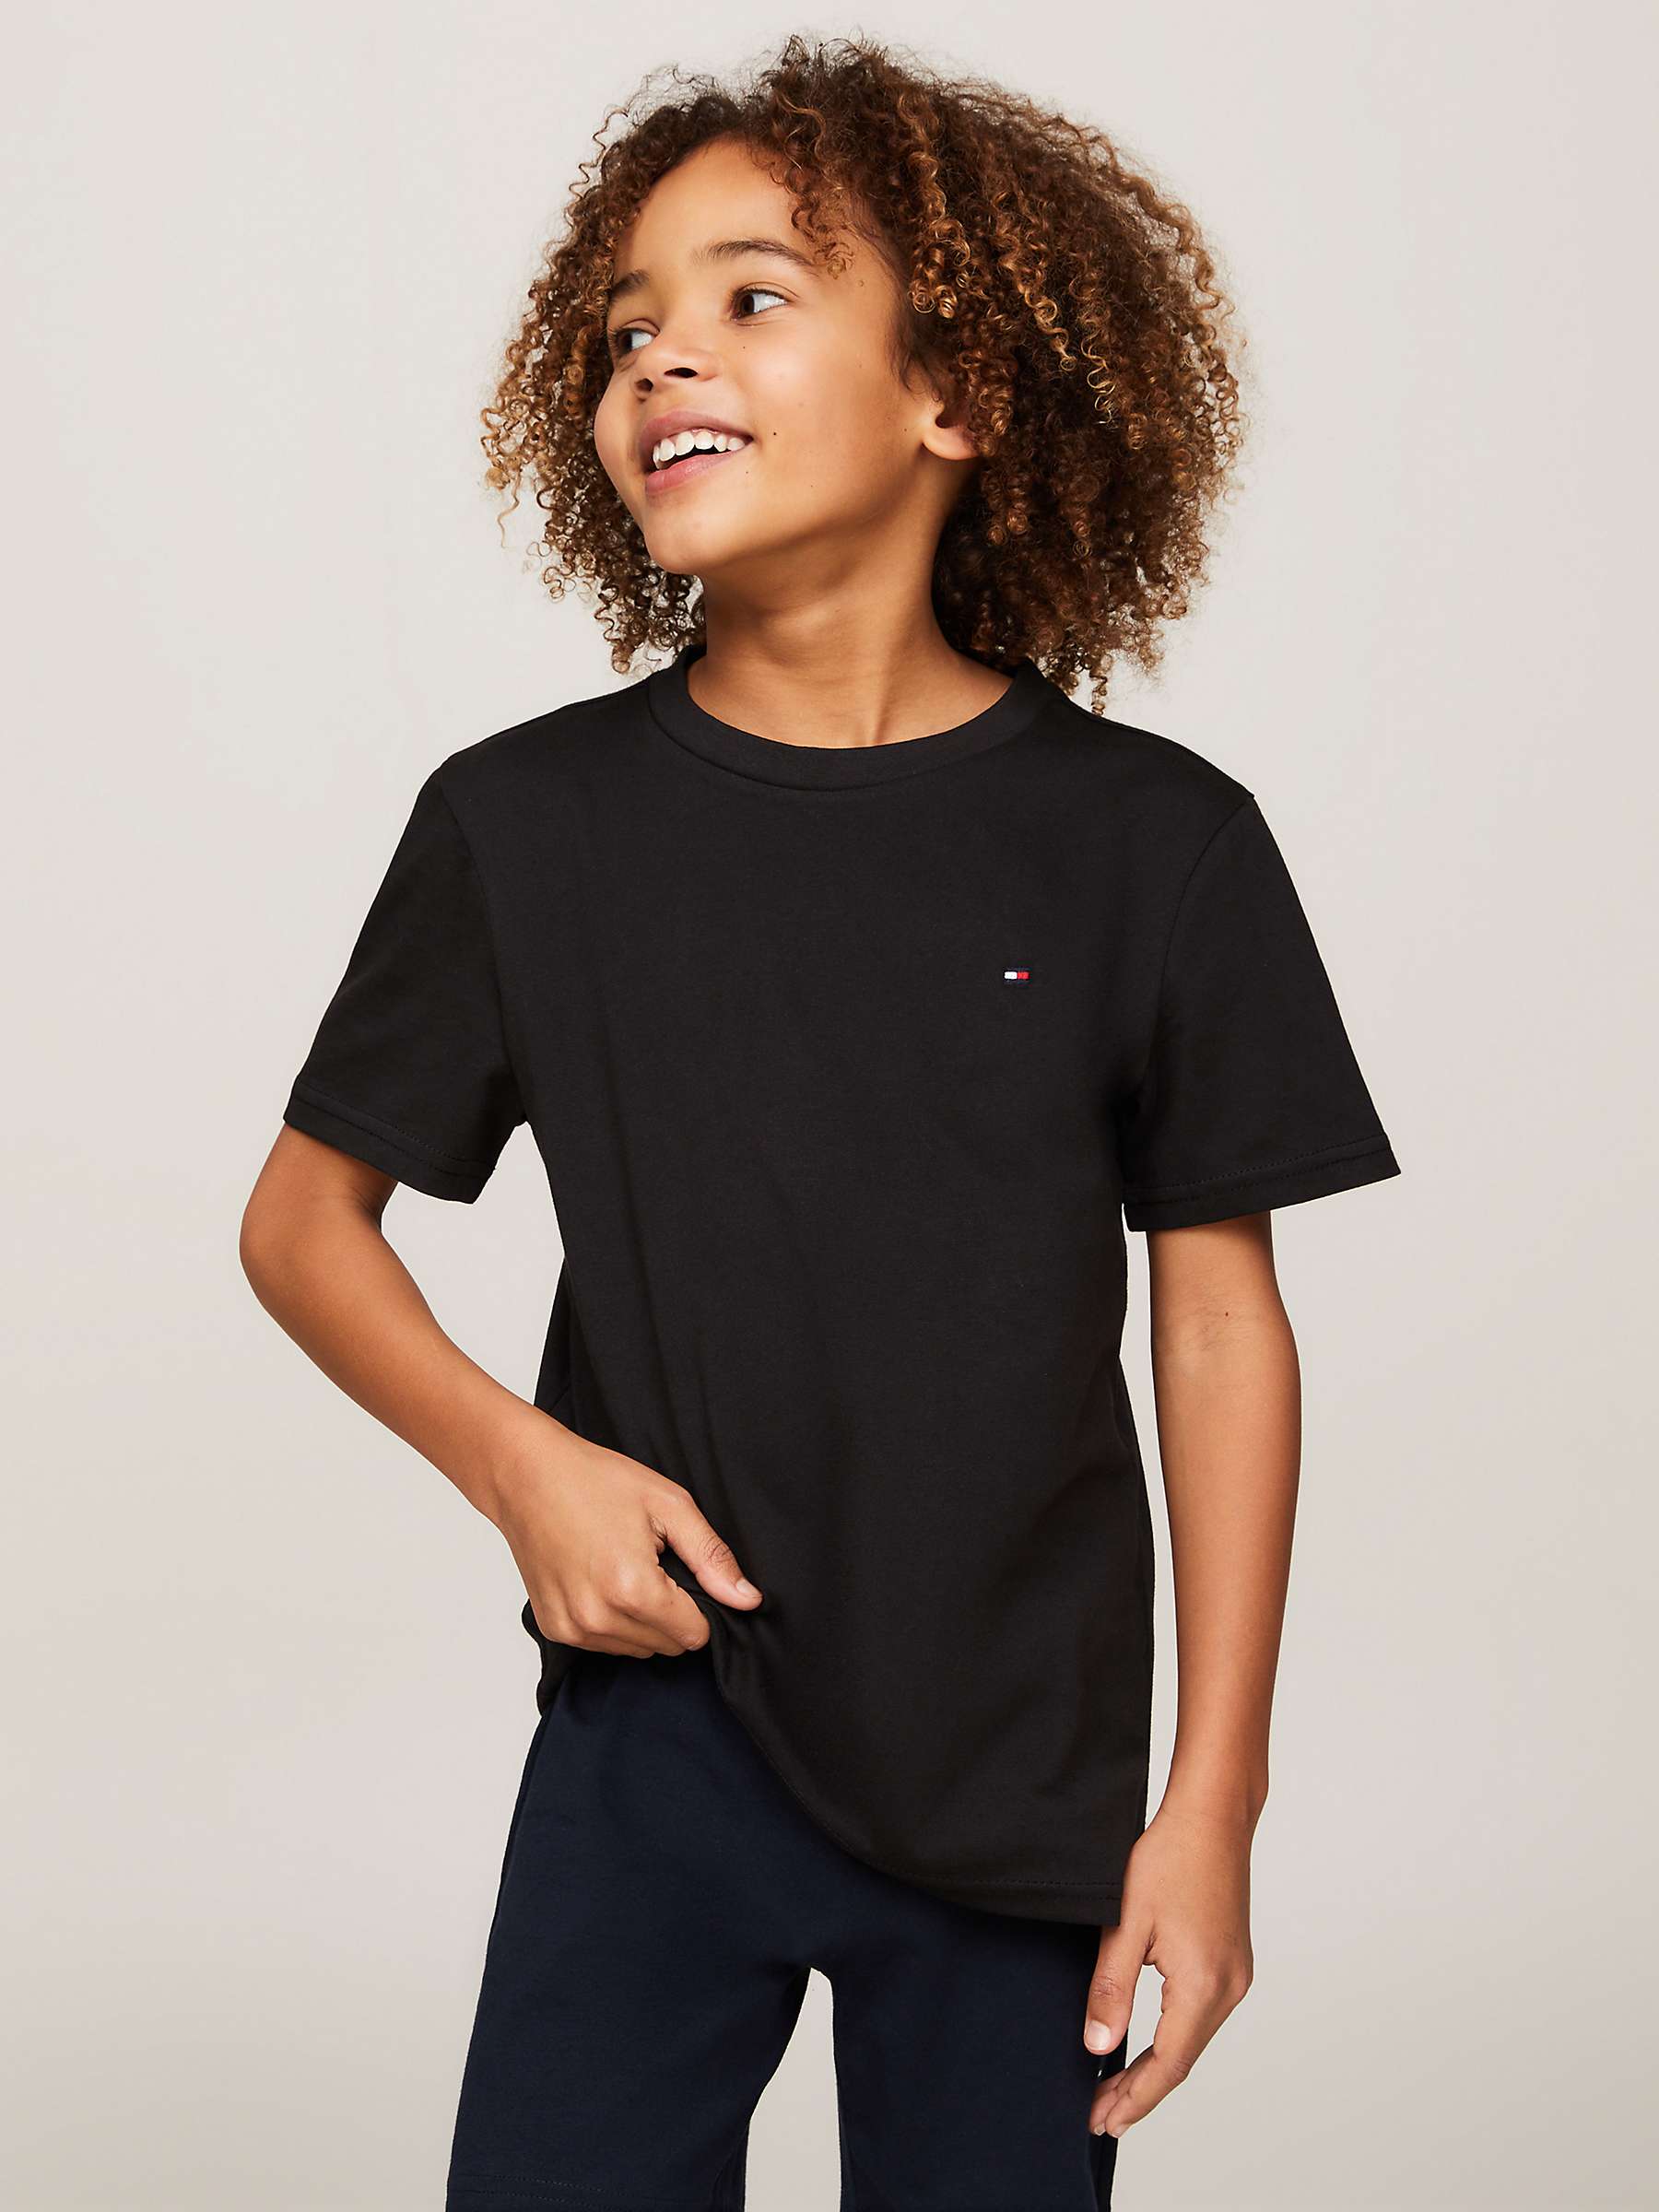 Buy Tommy Hilfiger Boy's 2 Pack T-Shirts, Grey/Black Online at johnlewis.com